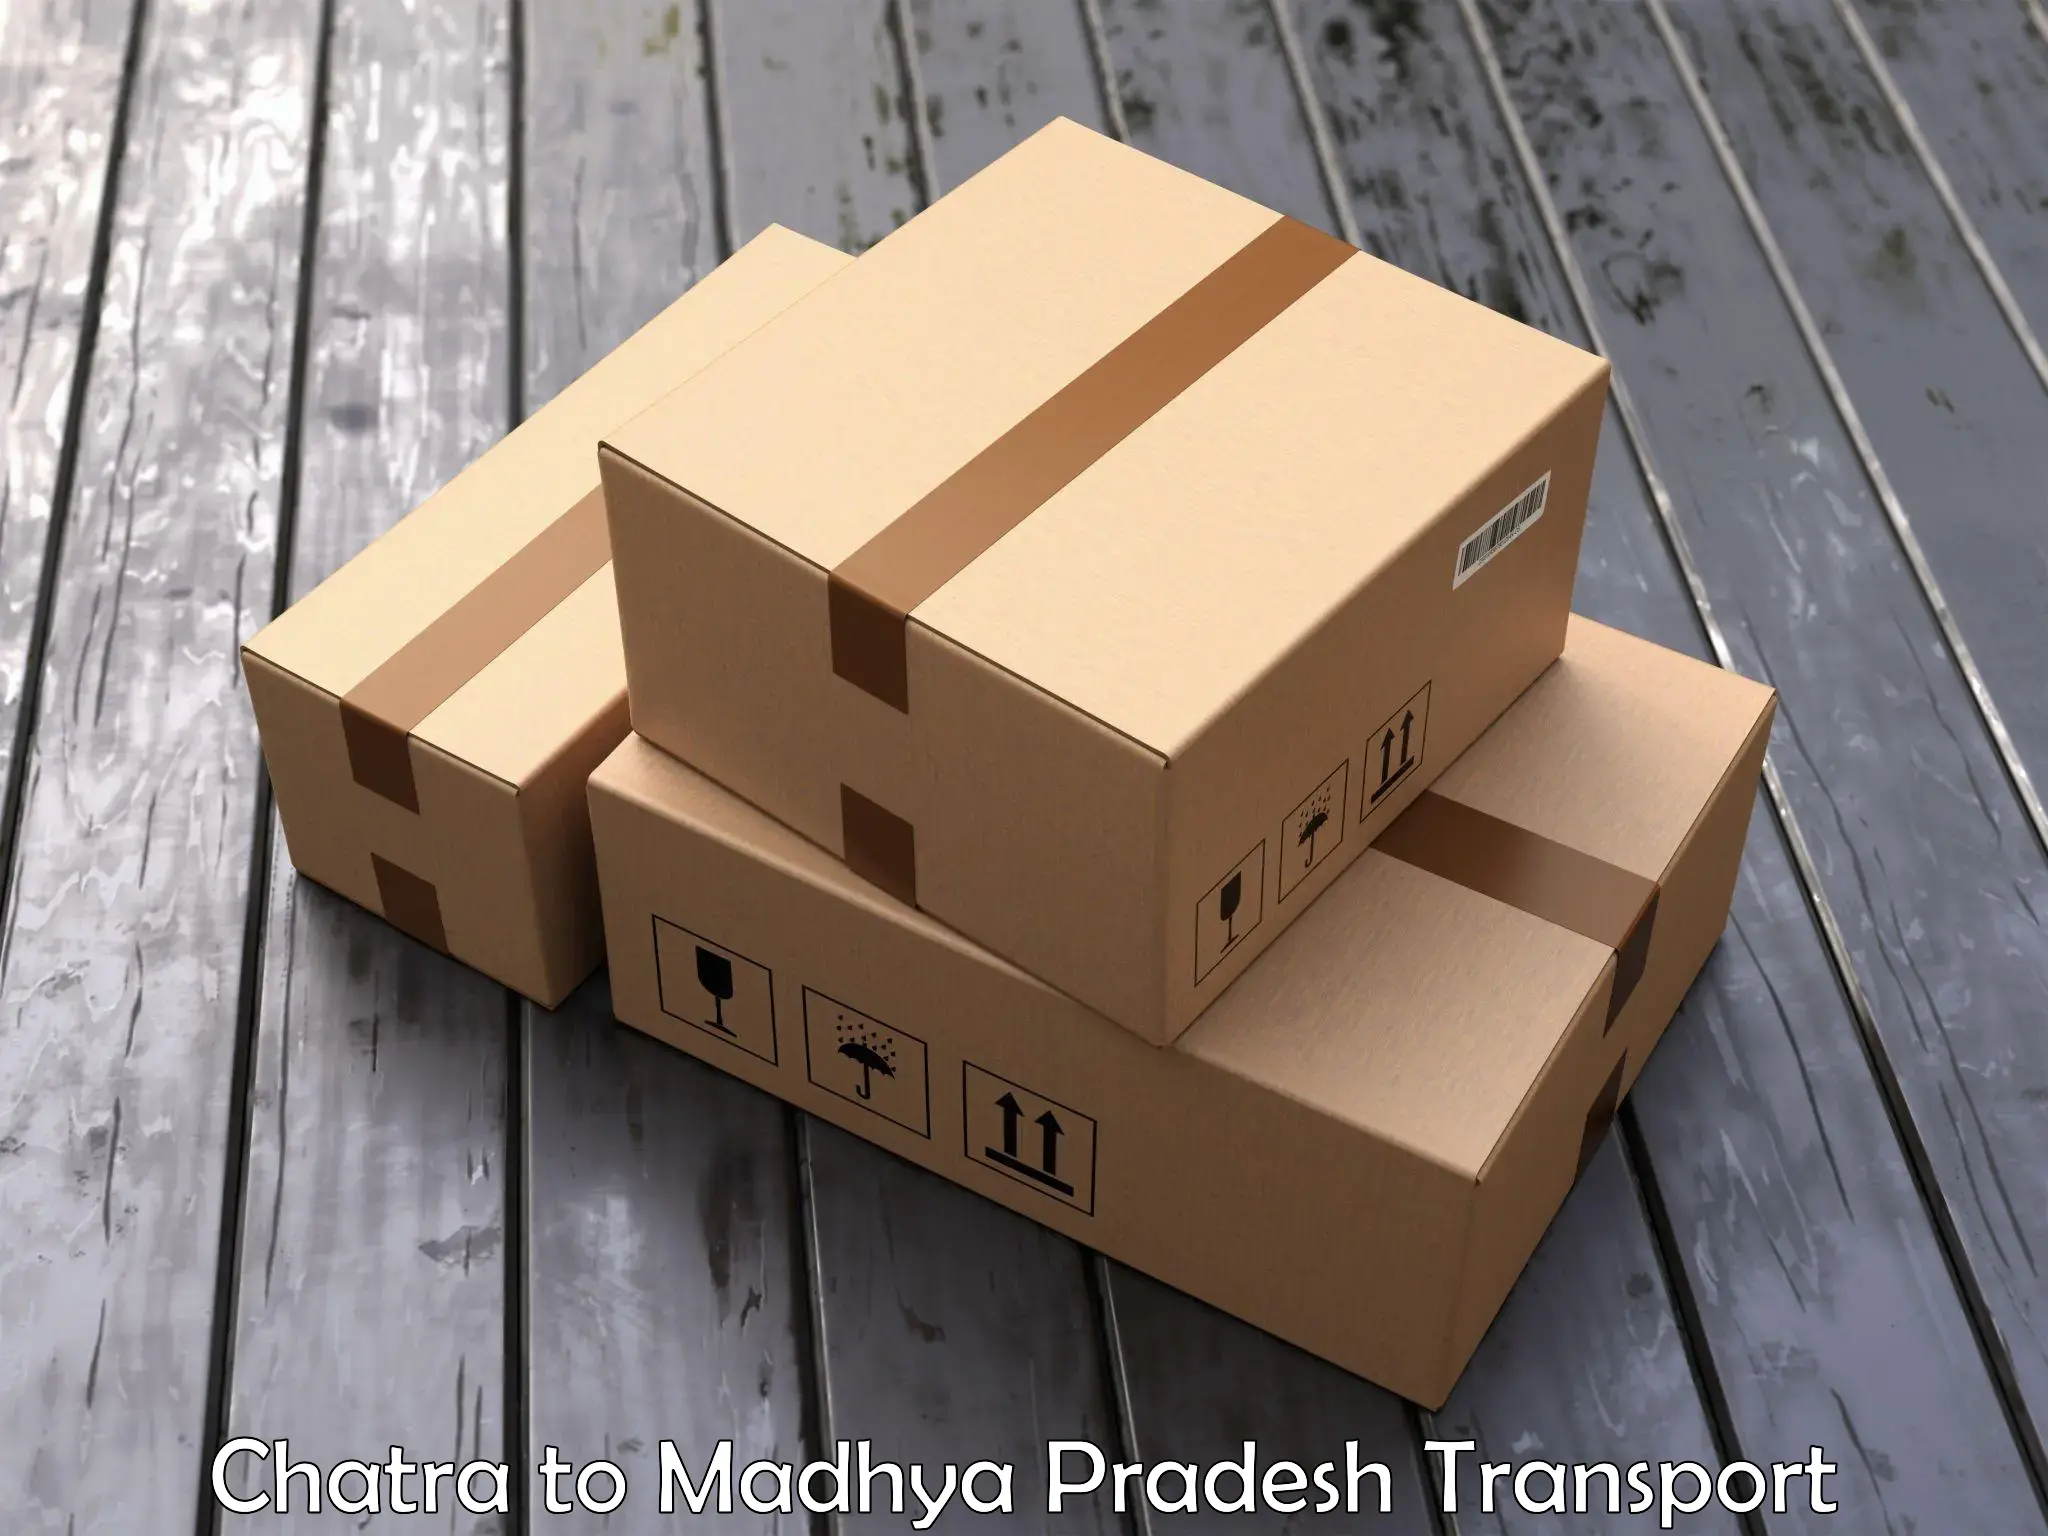 Furniture transport service Chatra to Rampur Naikin